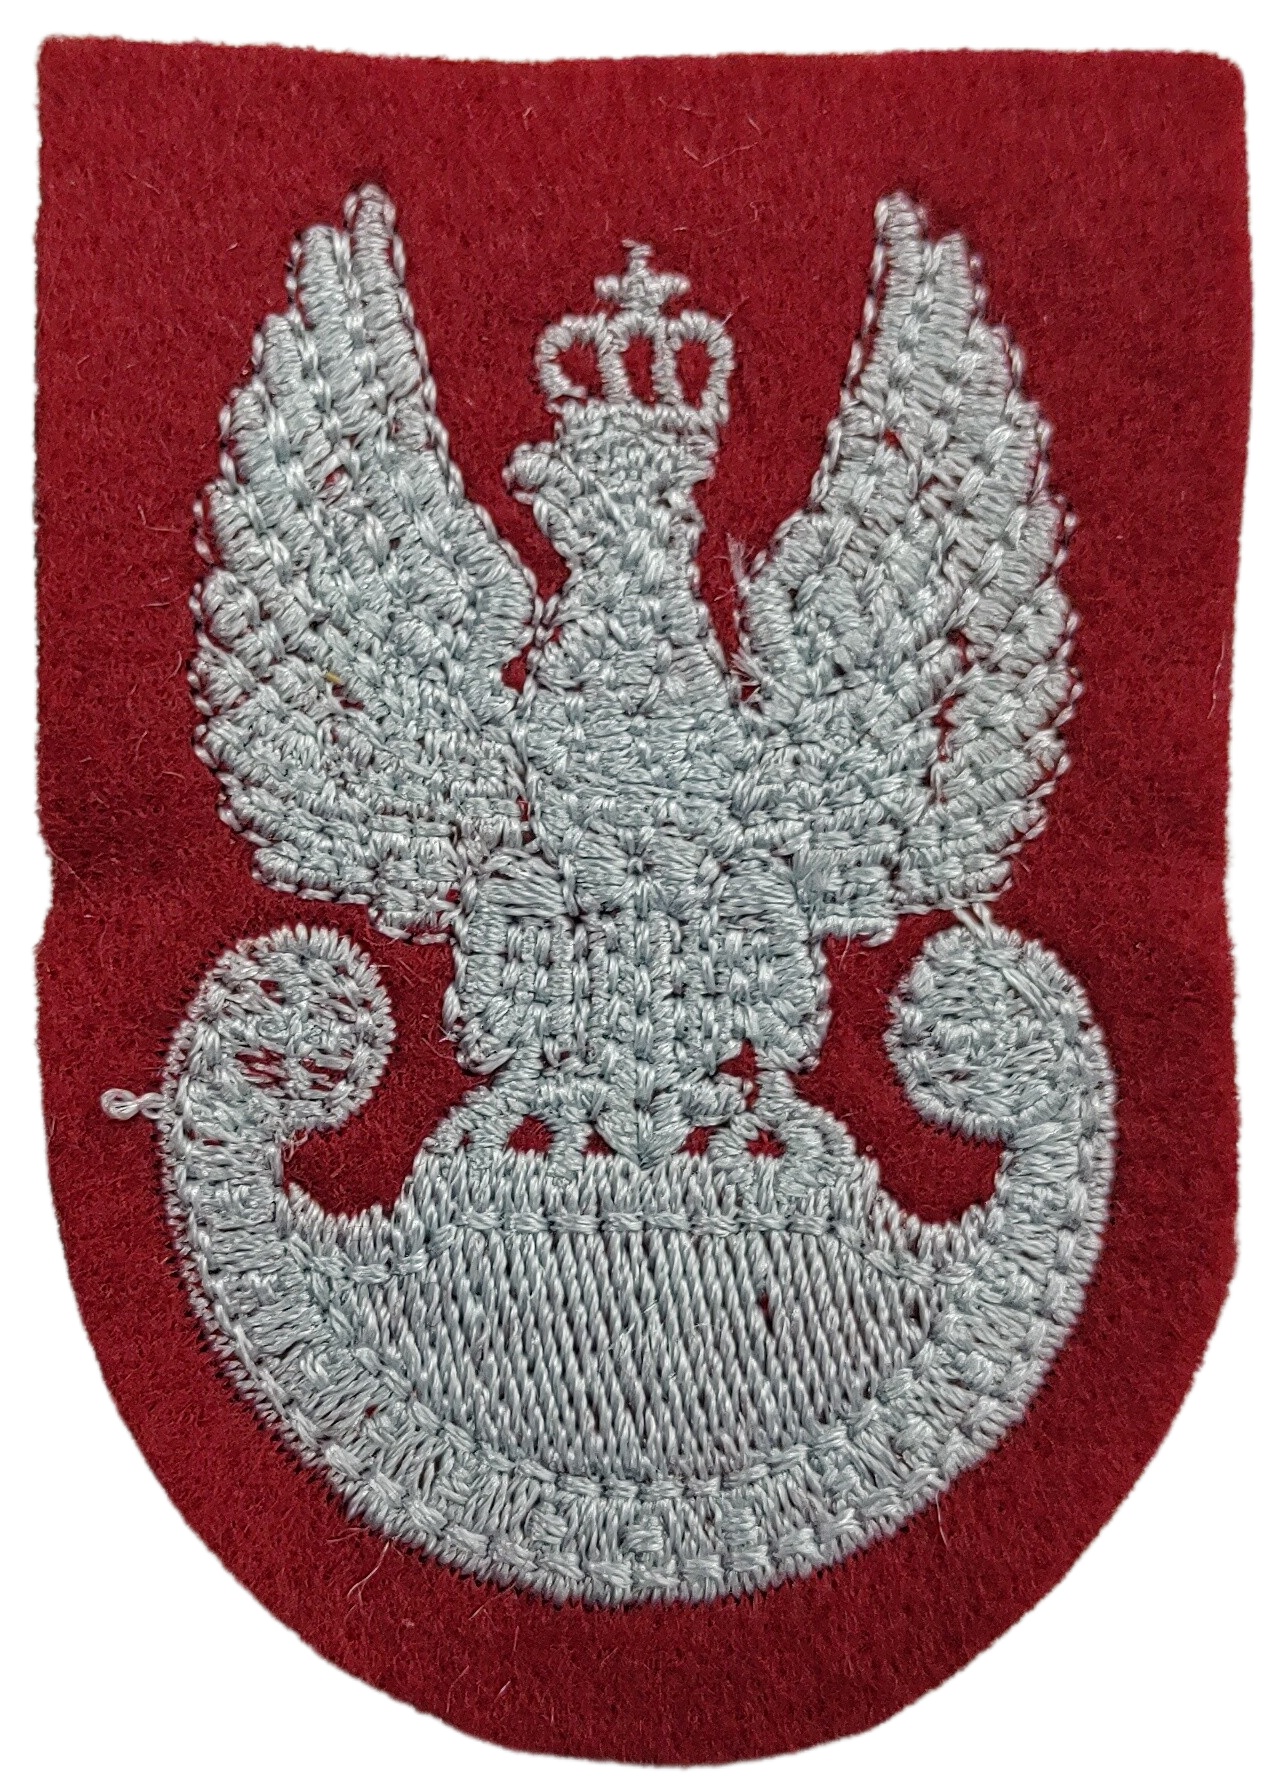 Nášivka na baret pozemních sil červená Orel Wz.93 Polsko WP originál